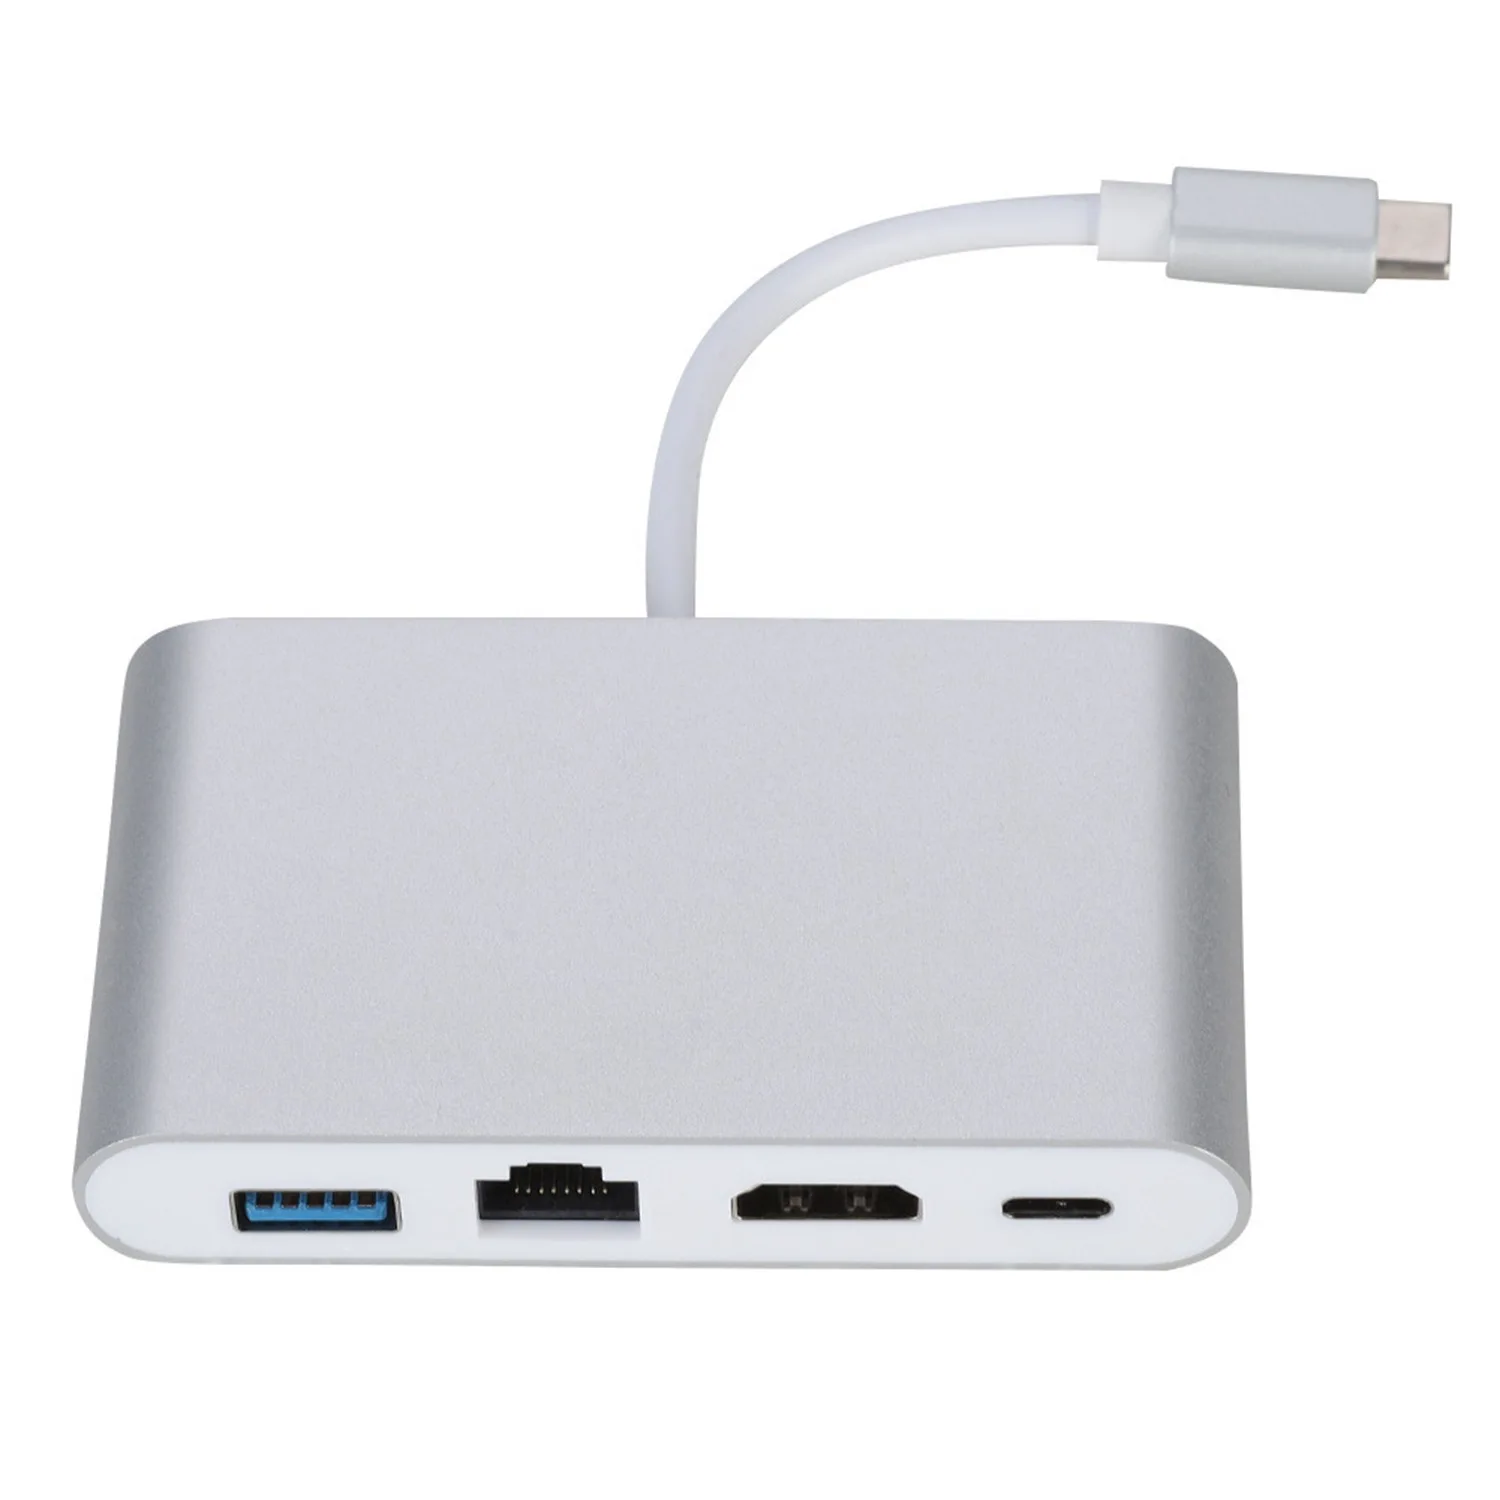 Yıldırım Rj45 Ethernet LAN HDMI adaptörü 4 İN 1 4K TV USB Hub OTG kablo şarj dönüştürücü iPhone/ iPad için Görüntü  4